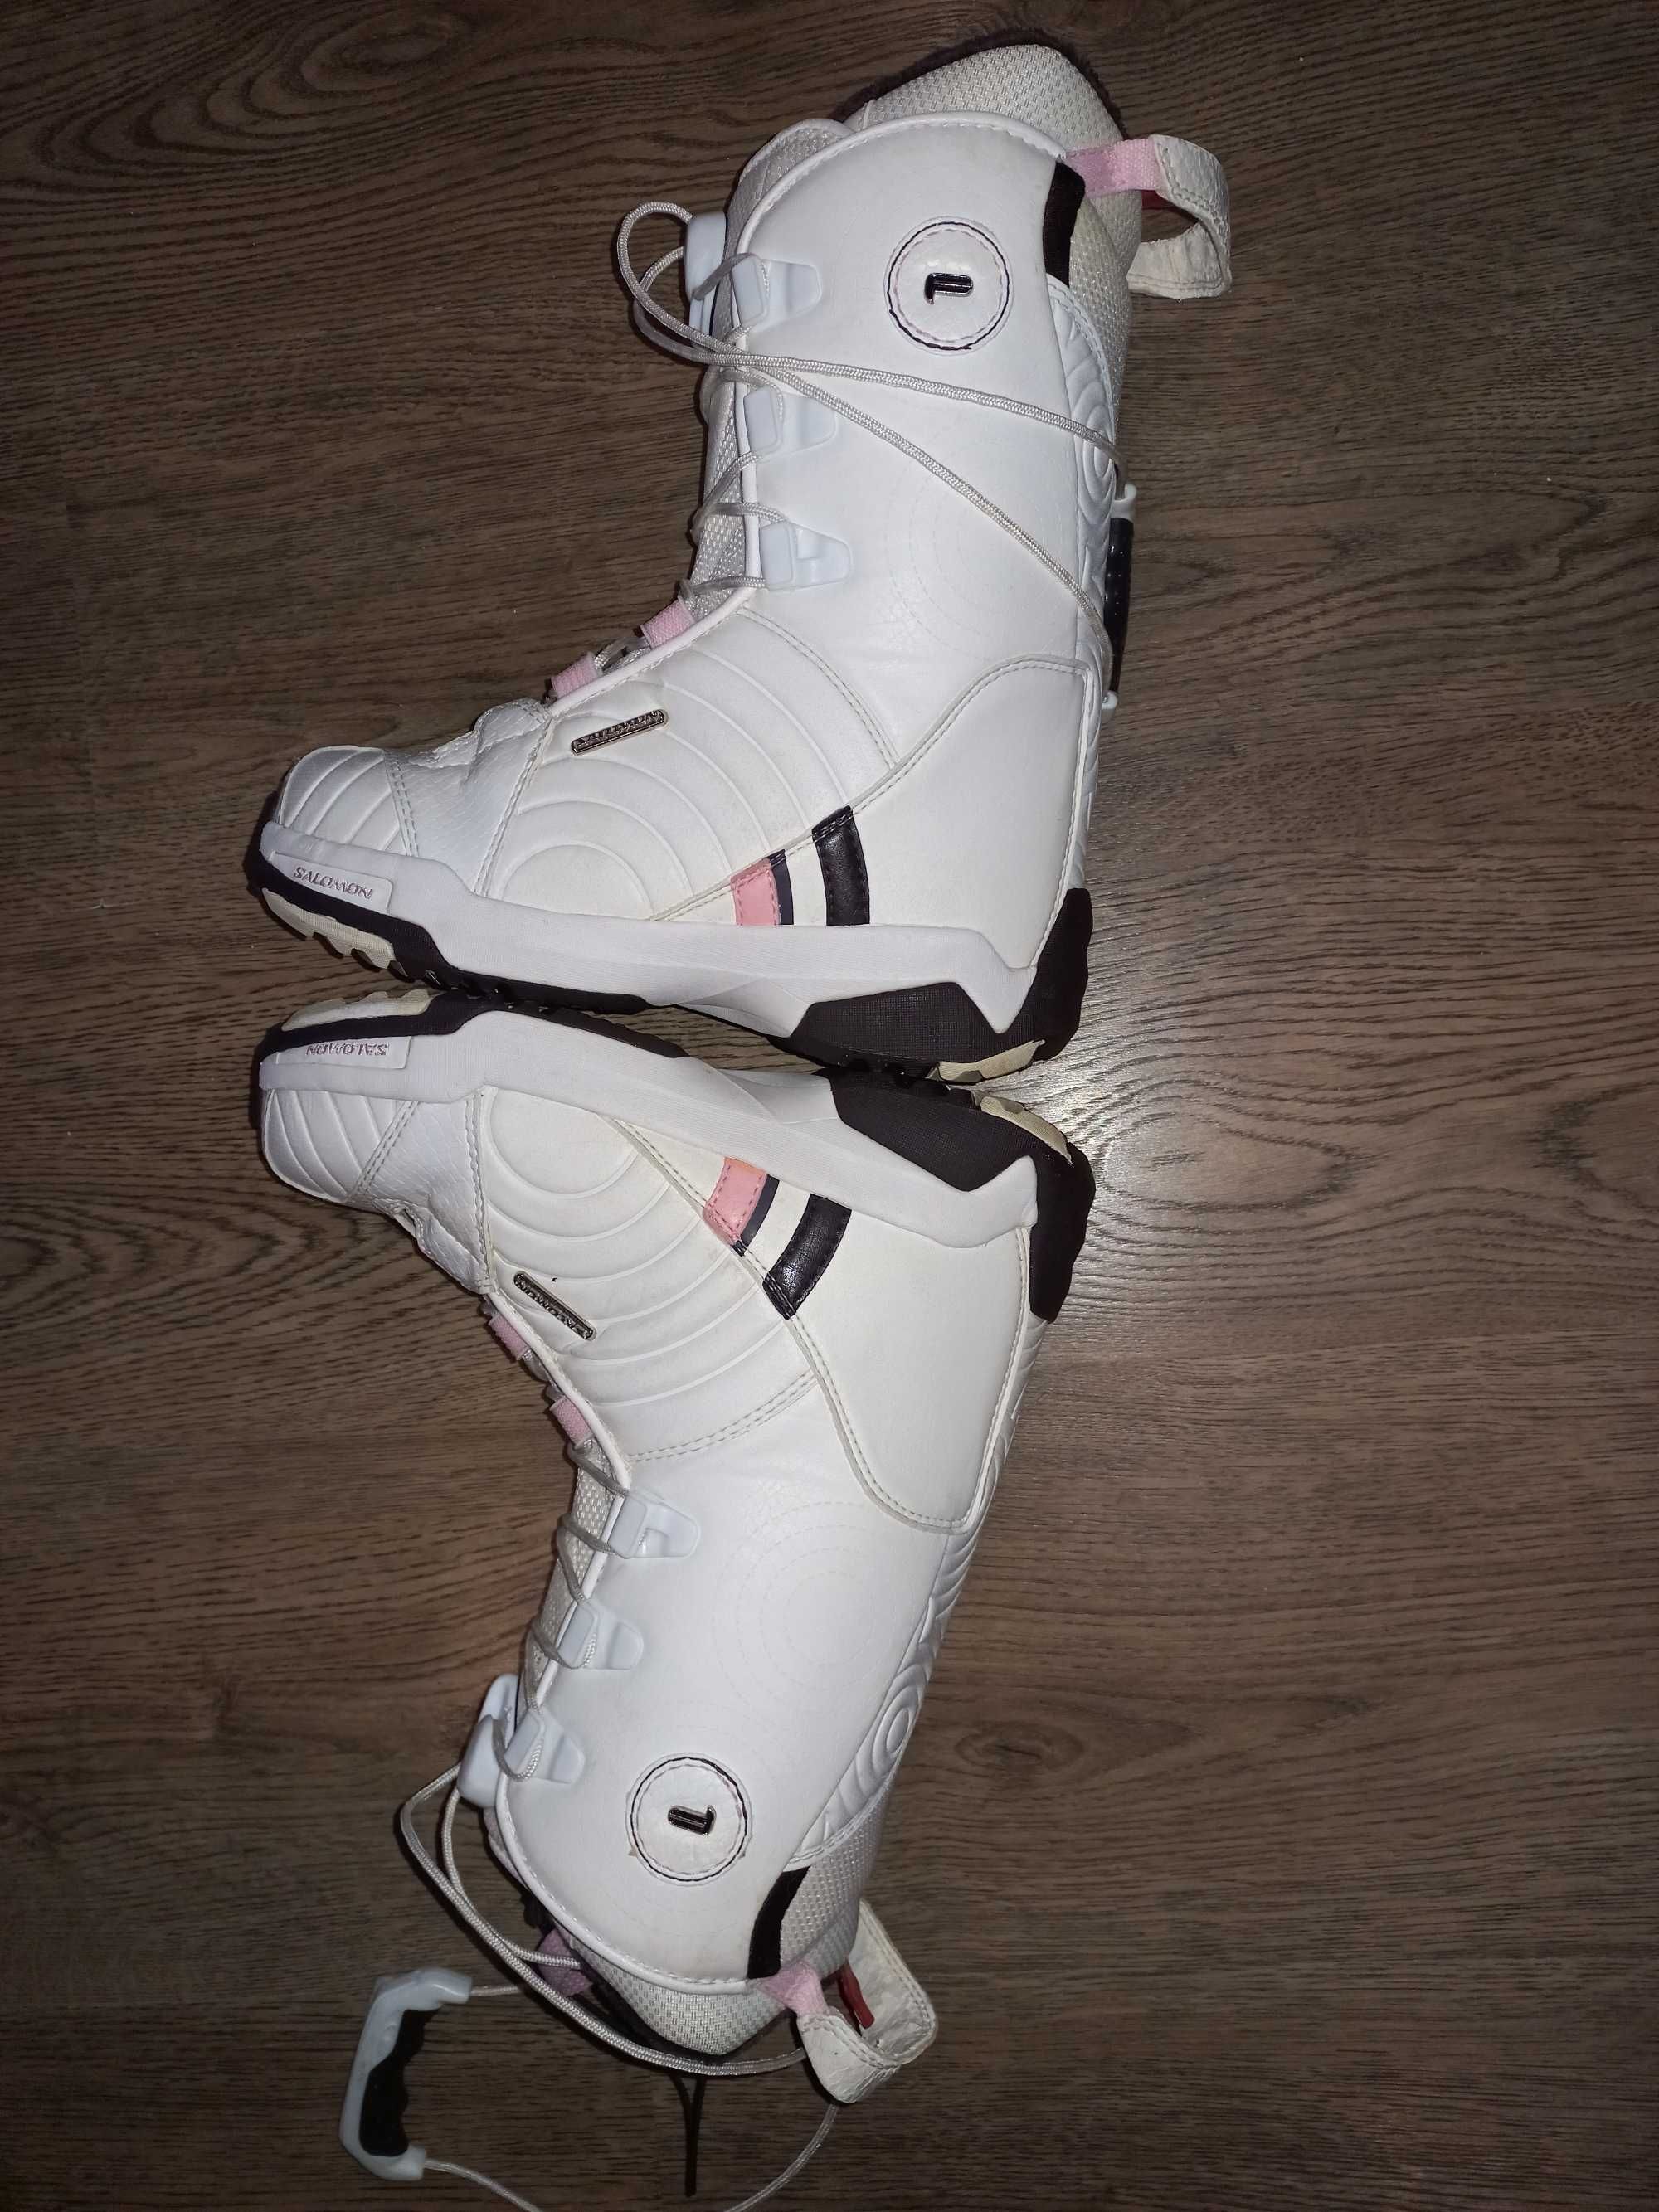 Buty snowboardowe Salomon rozmiar 38 (wkładka 23cm)